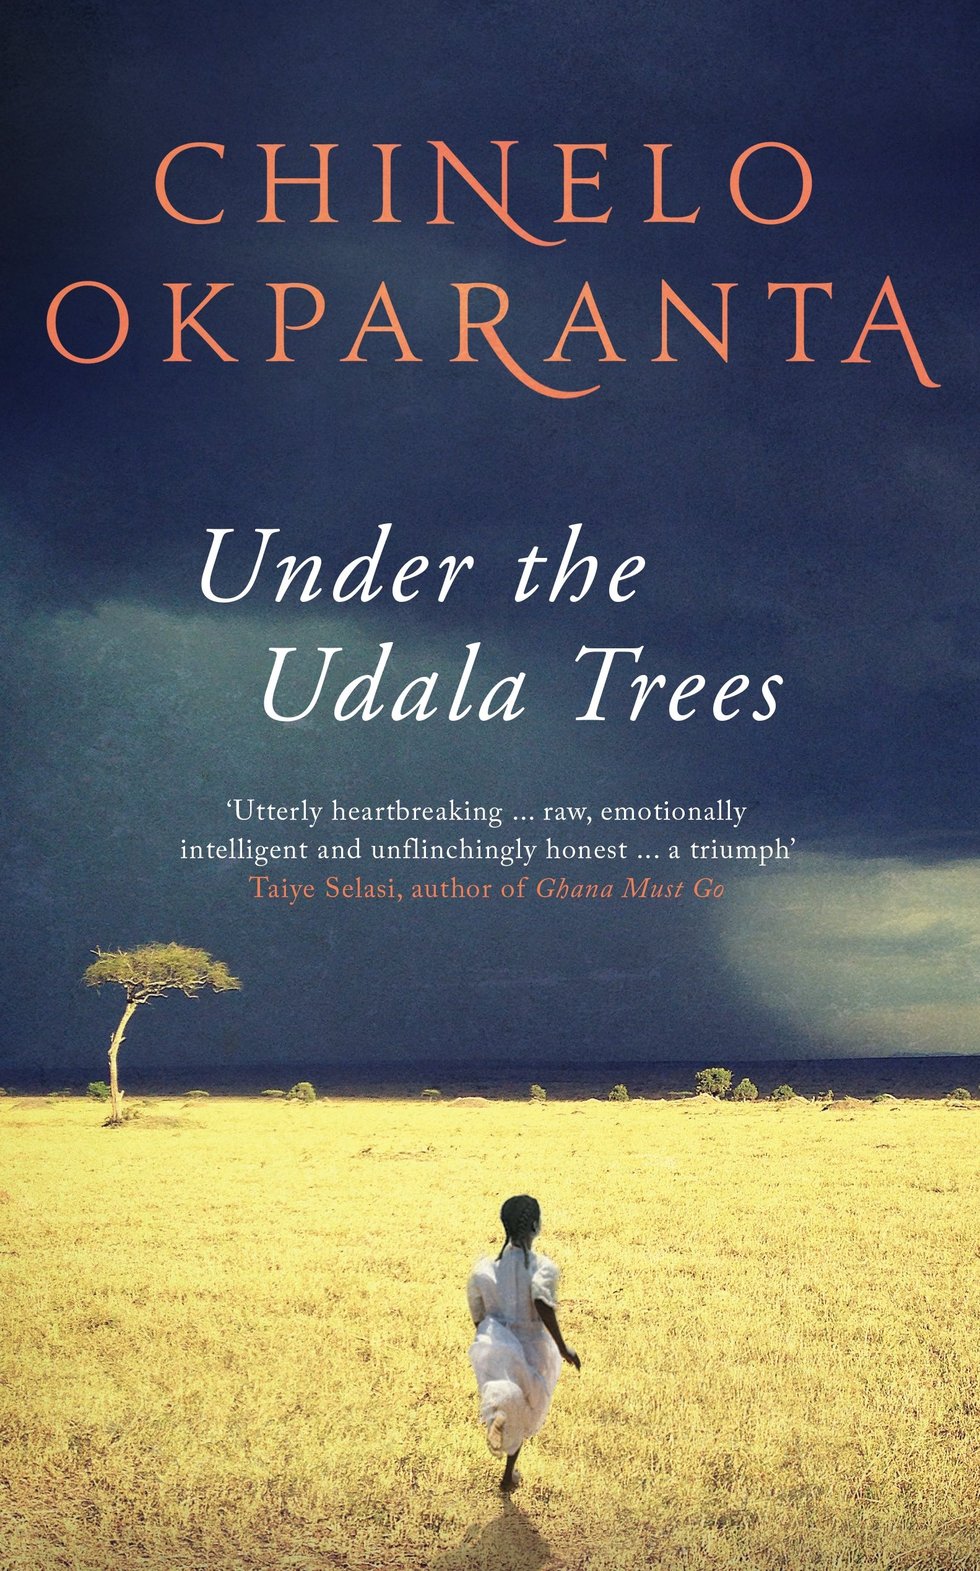 under the udala trees by chinelo okparanta